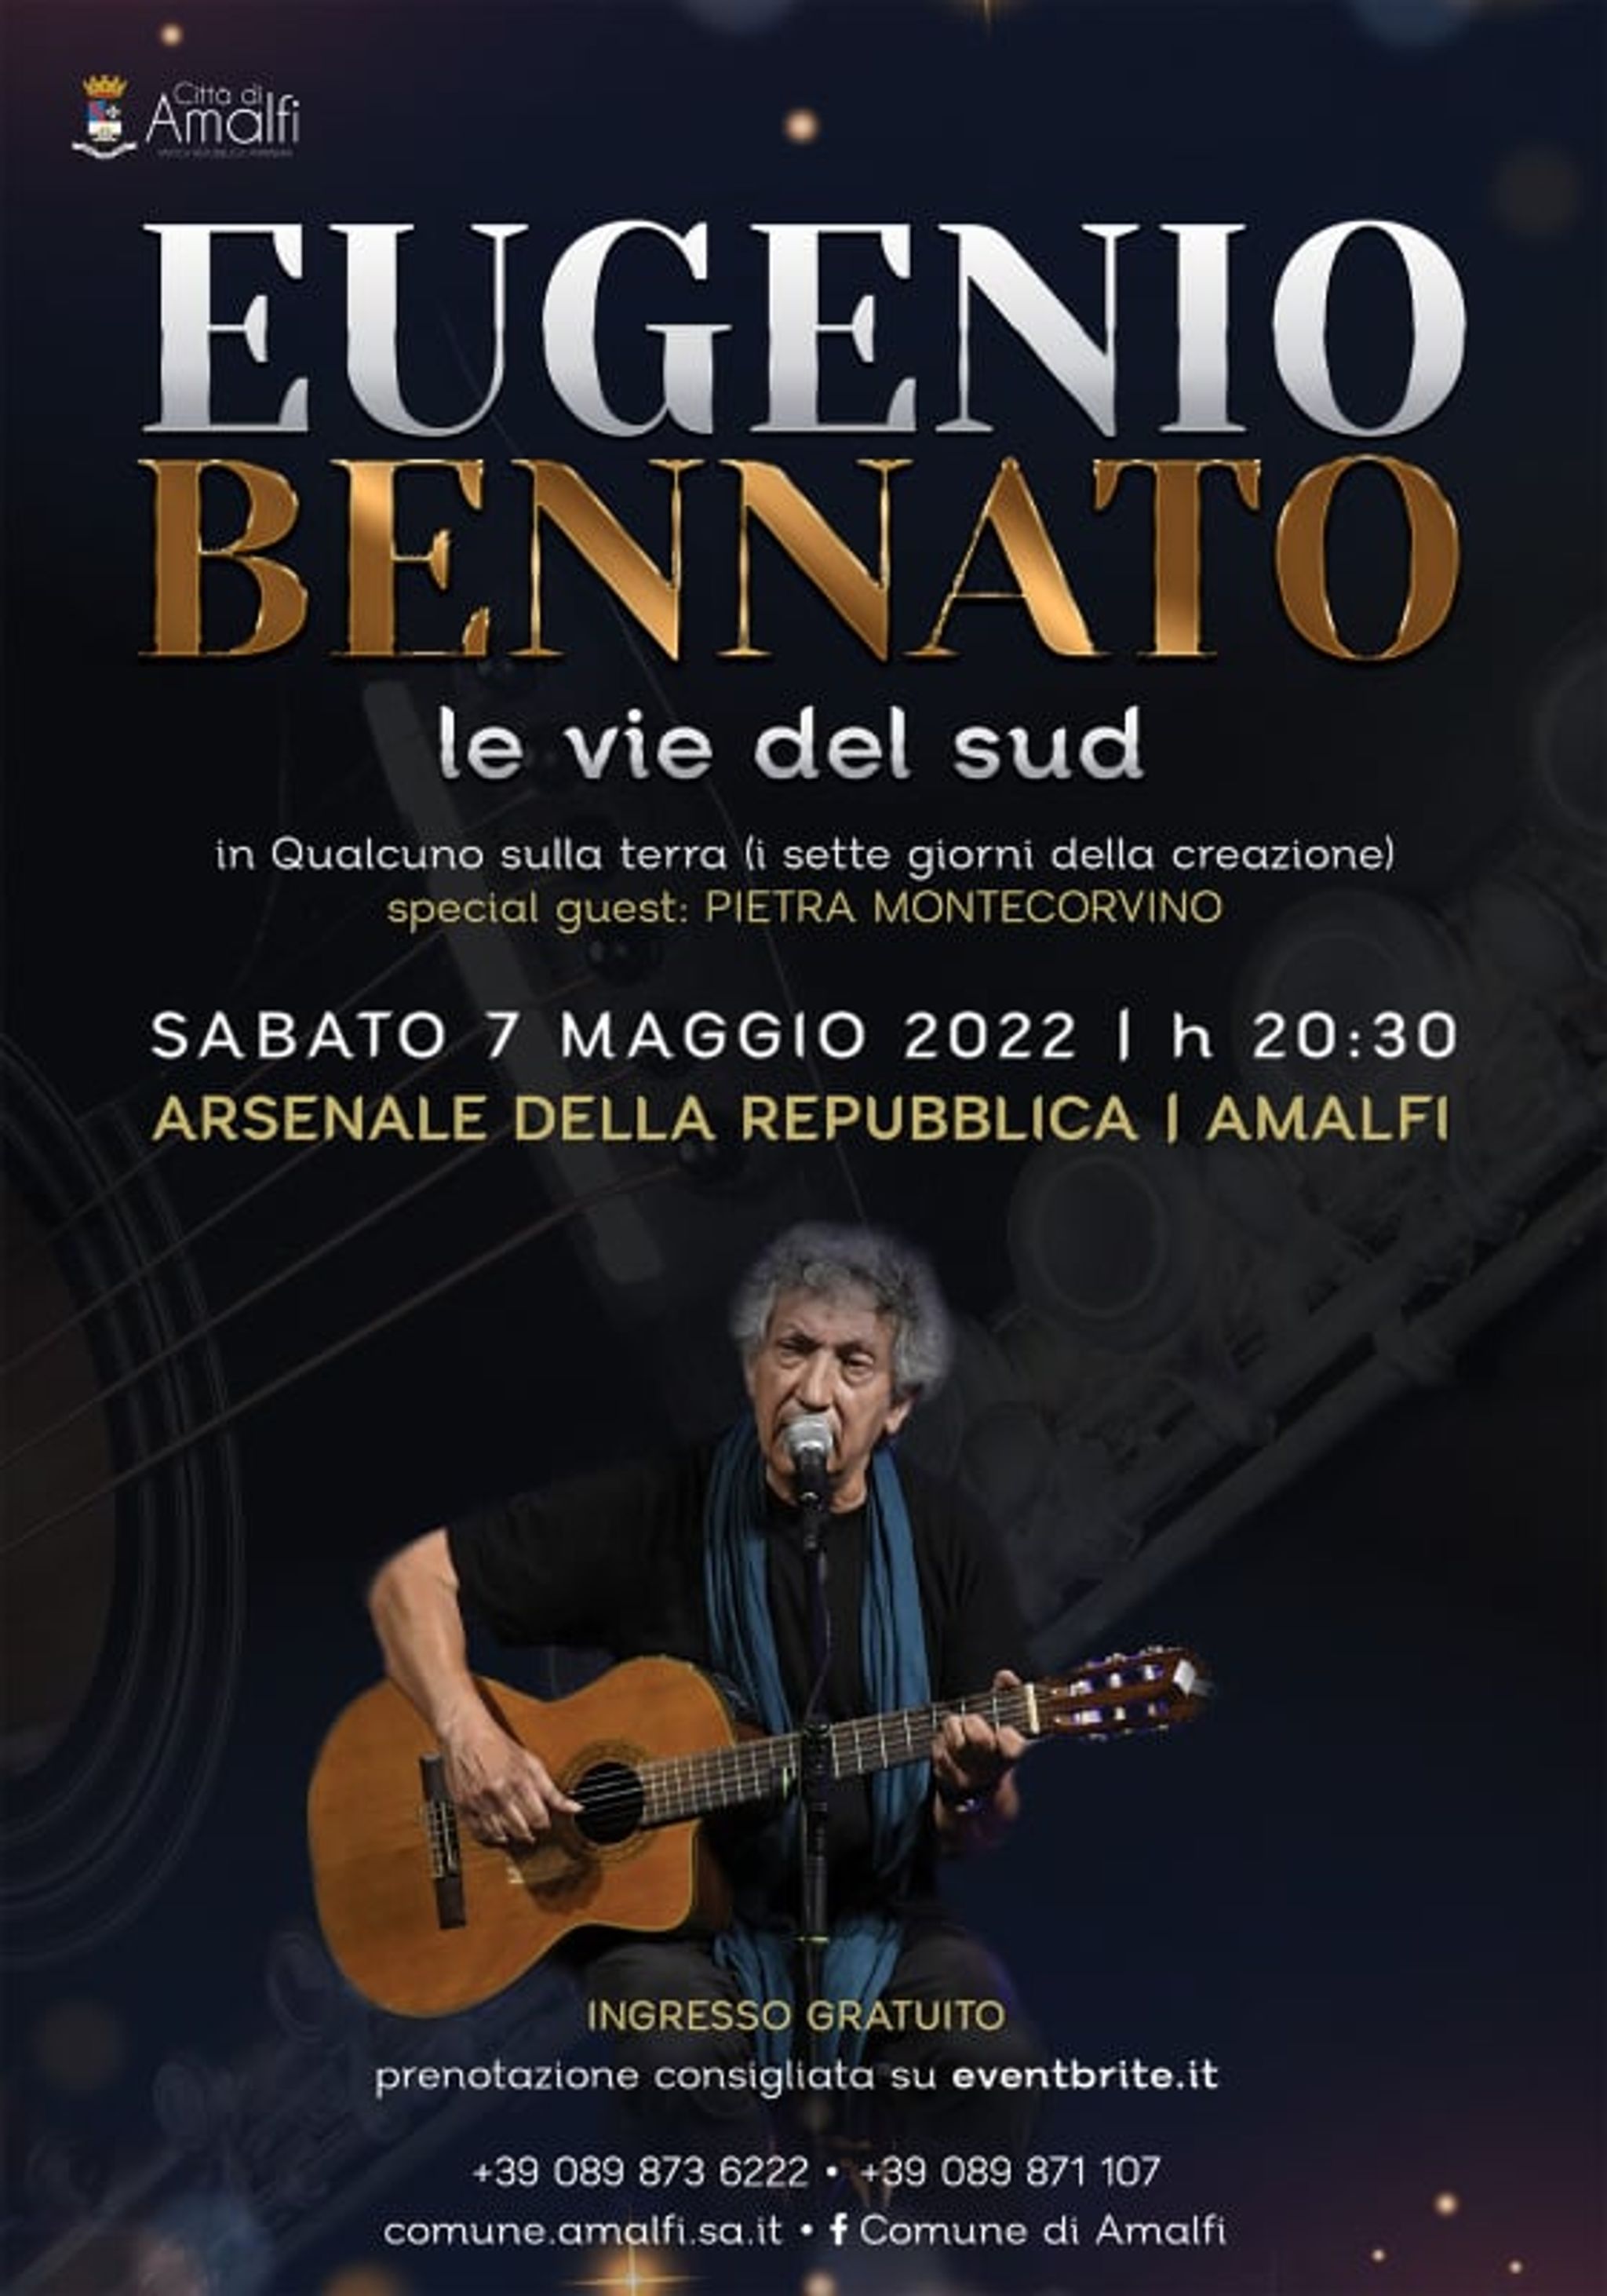 Eugenio Bennato in concerto ad Amalfi